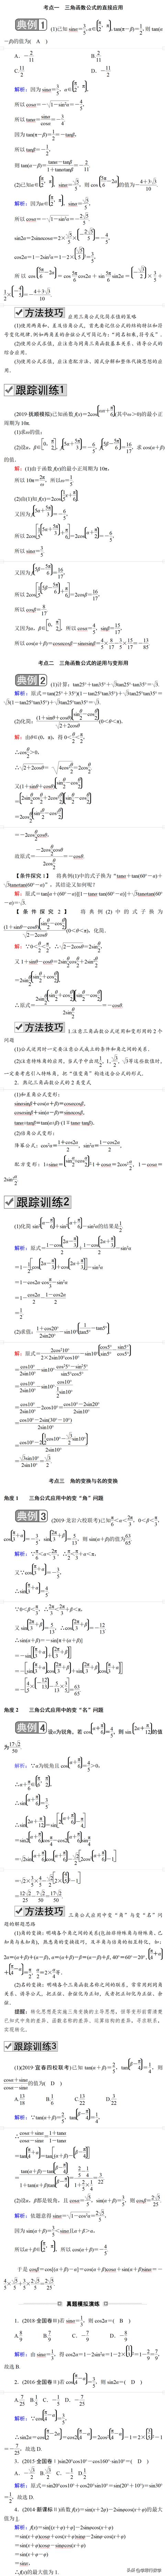 差倍问题的公式和例题,差倍问题公式及例题(4)